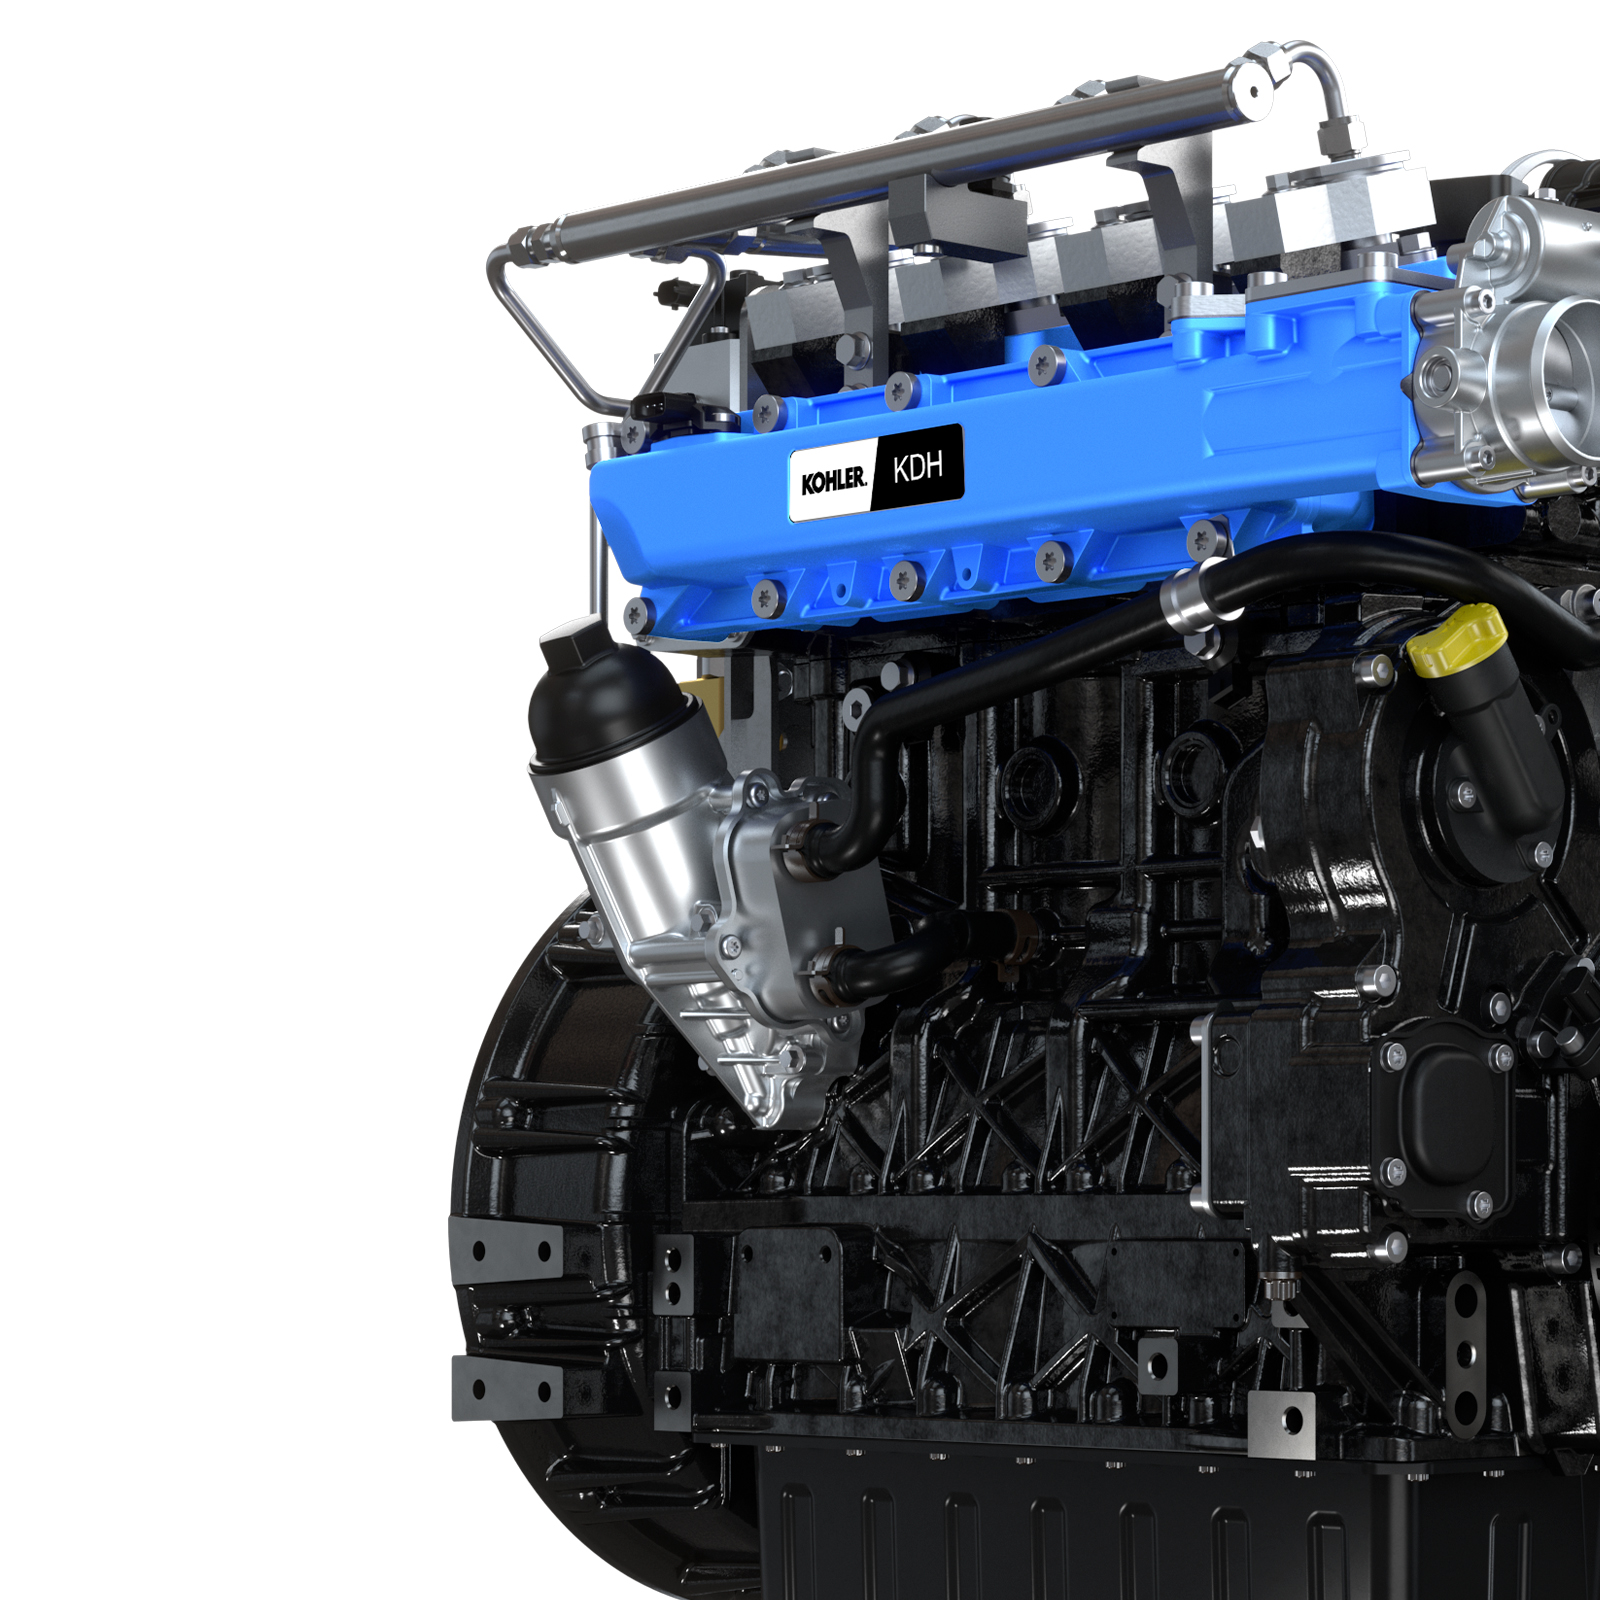 KDH Engine